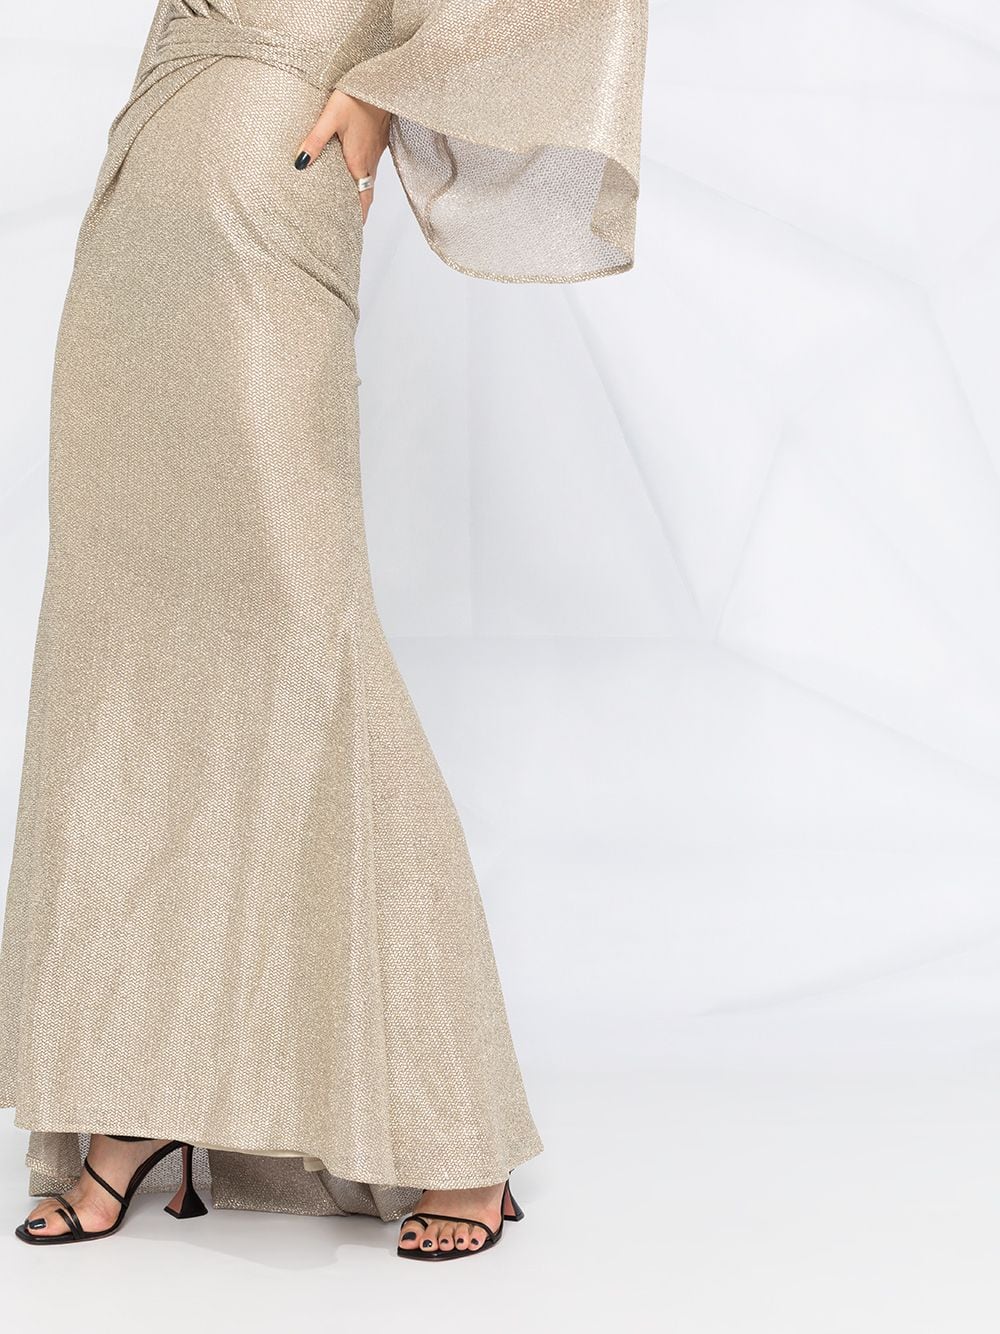 фото Talbot runhof драпированное платье с эффектом металлик